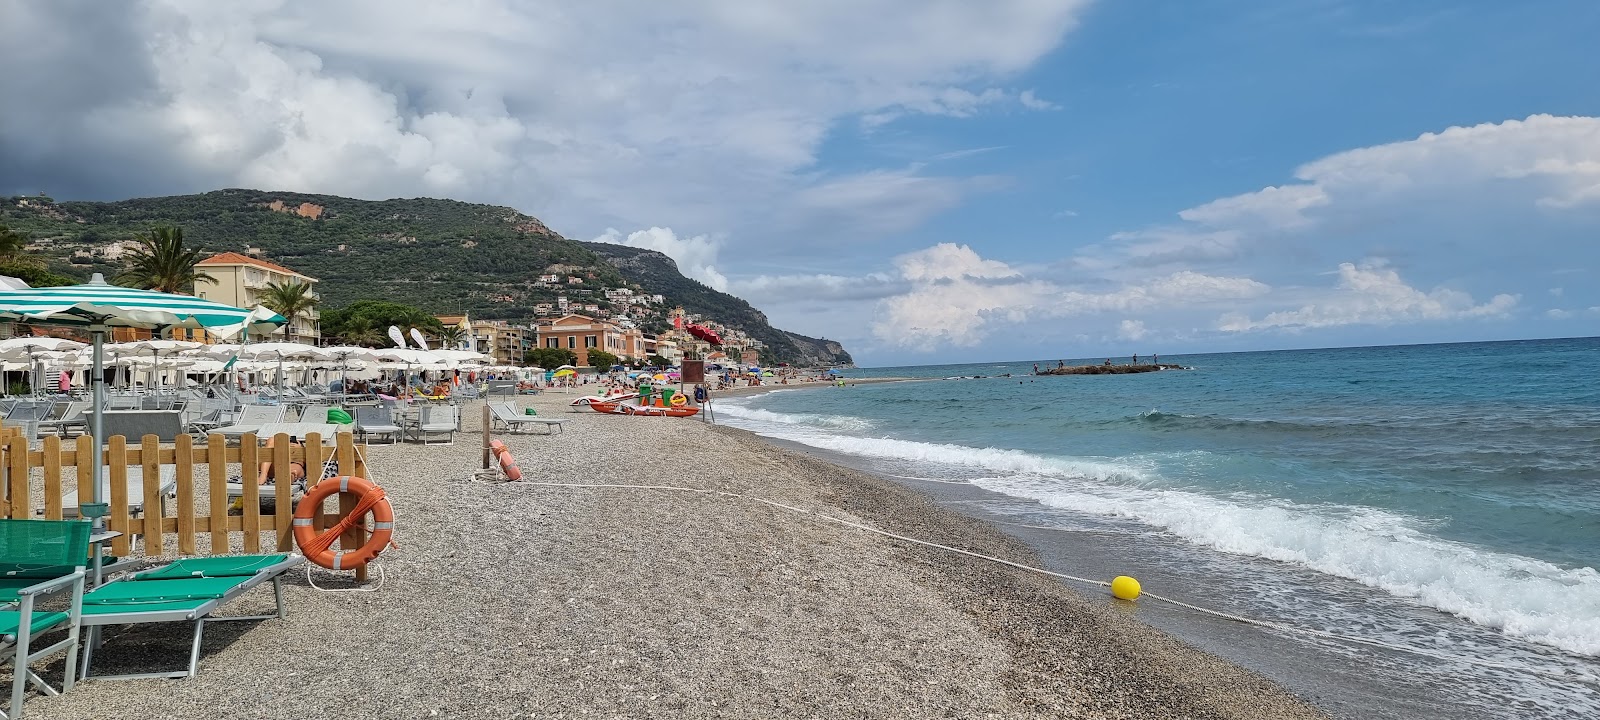 Foto de Spiaggia di Borgio área de complejo turístico de playa